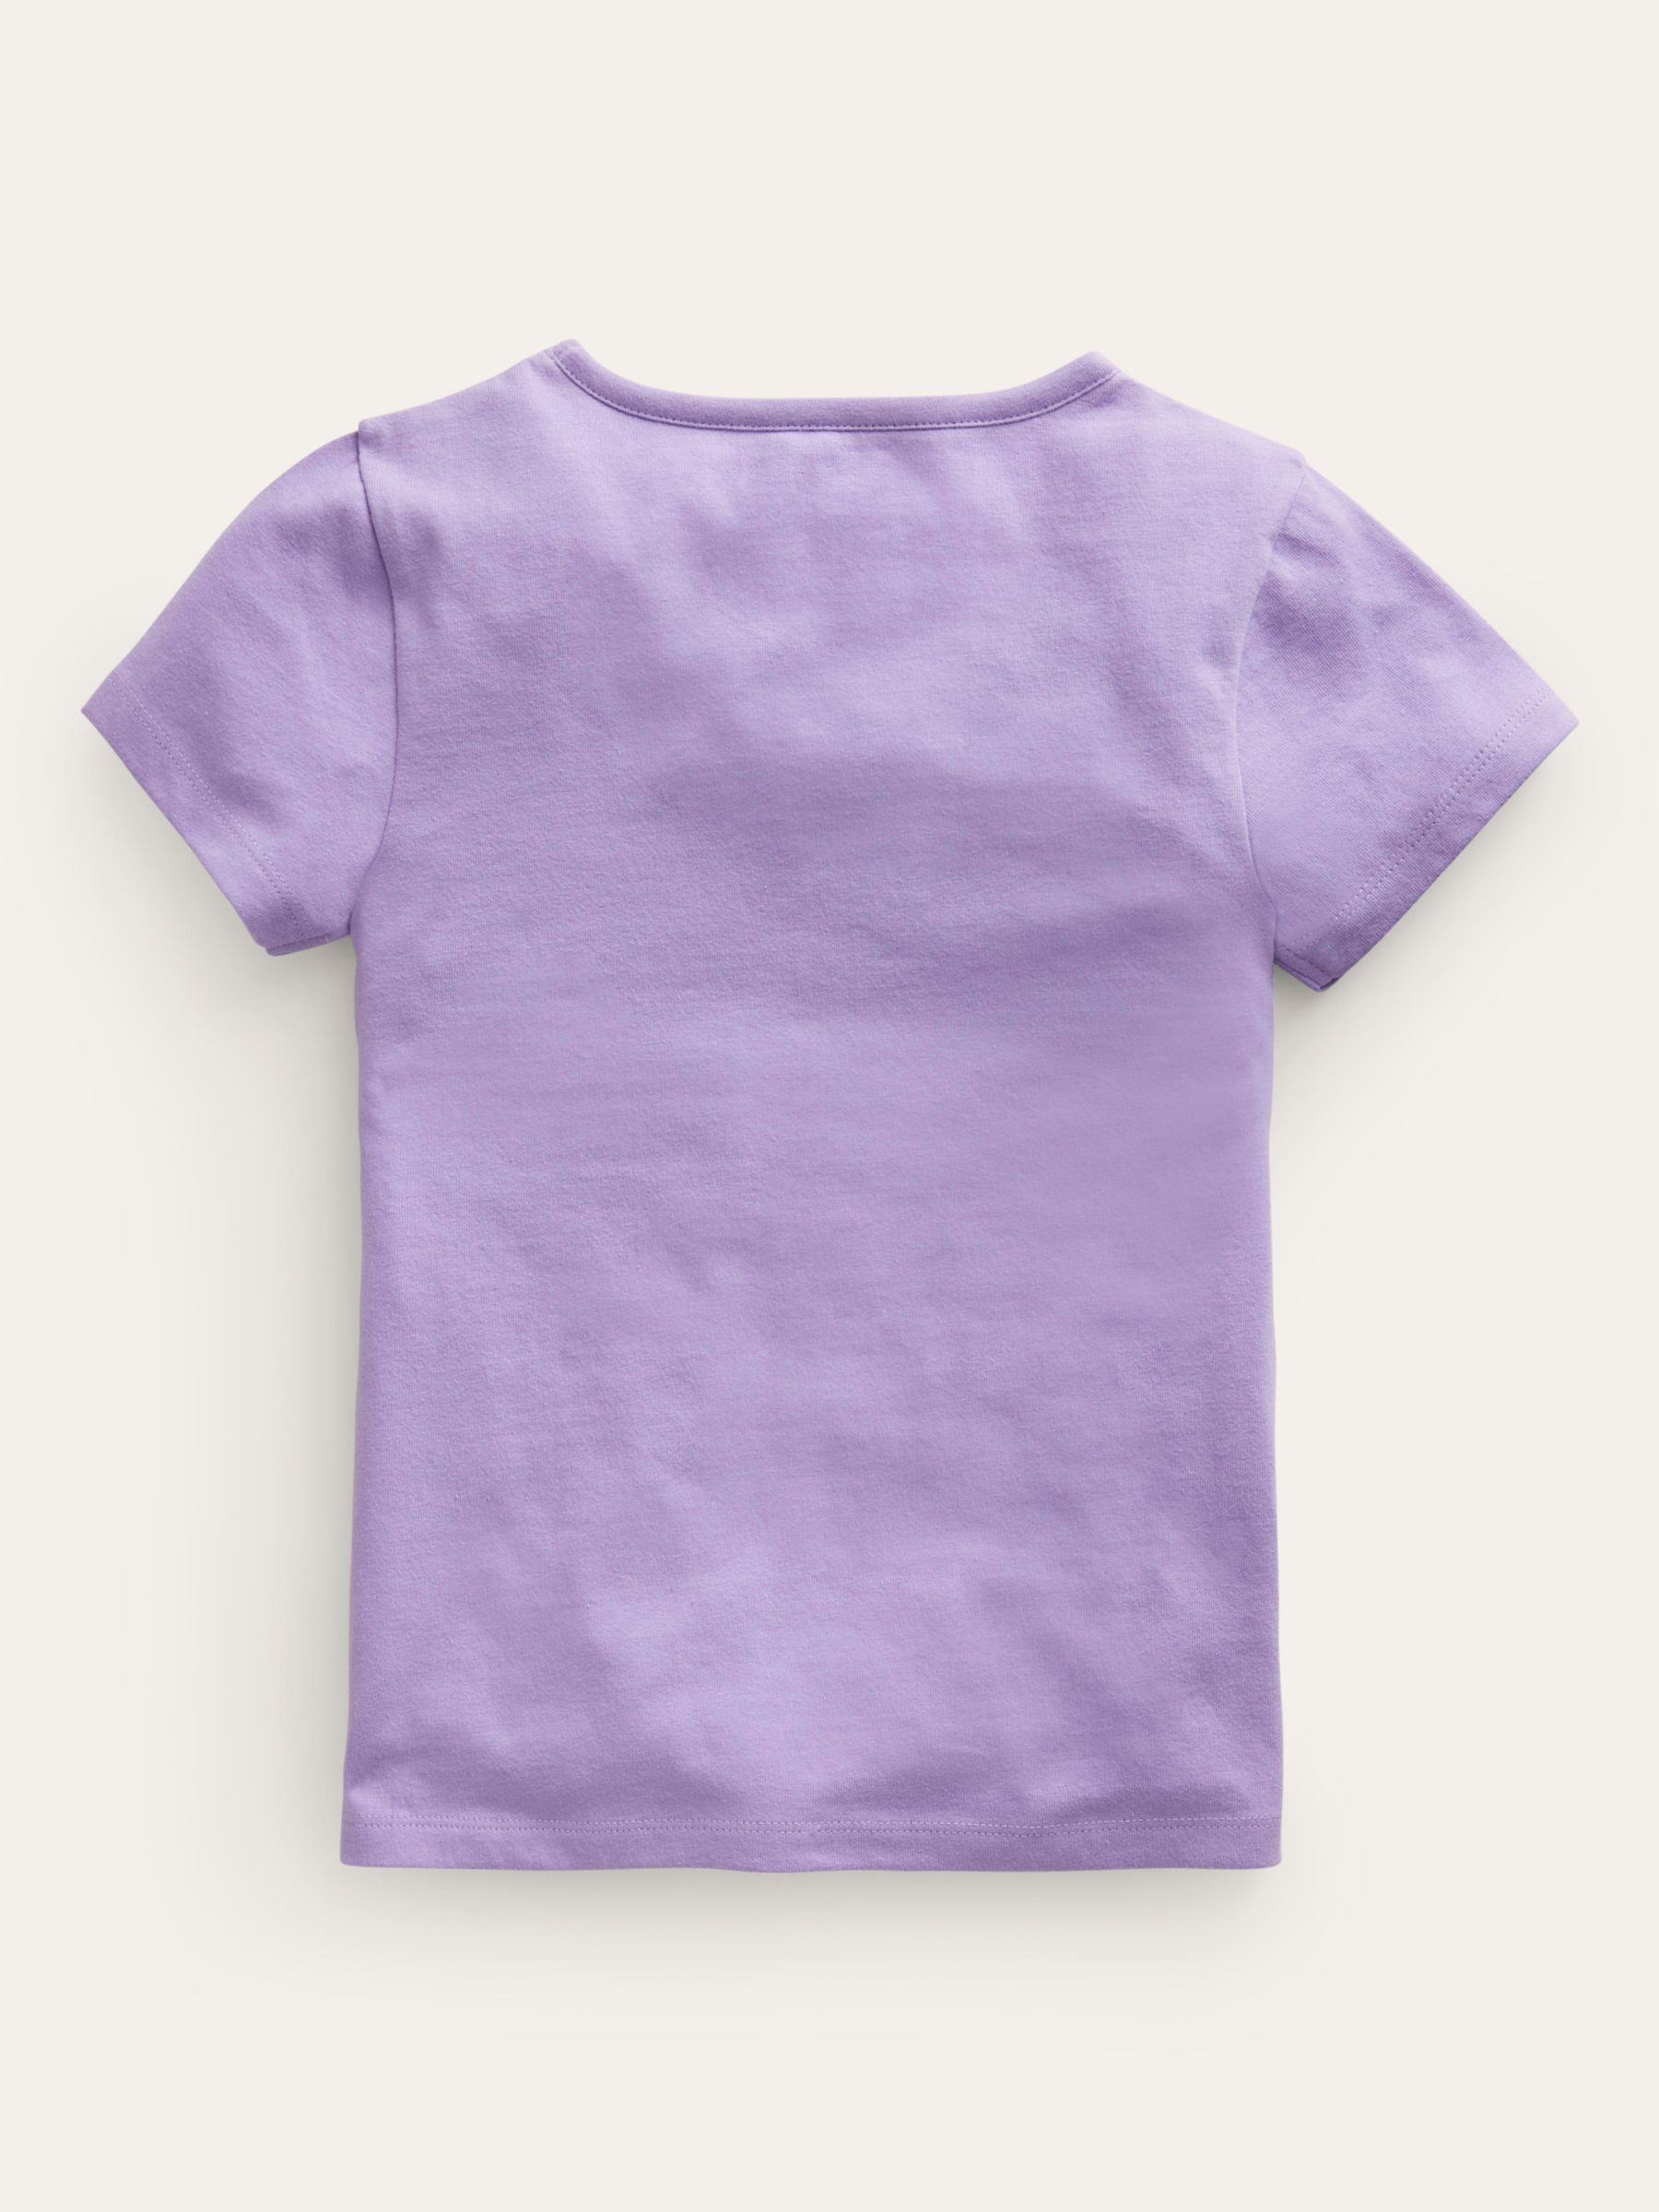 Mini Boden Kids' Safari Animals Superstitch T-Shirt, Violet, 12-18 months